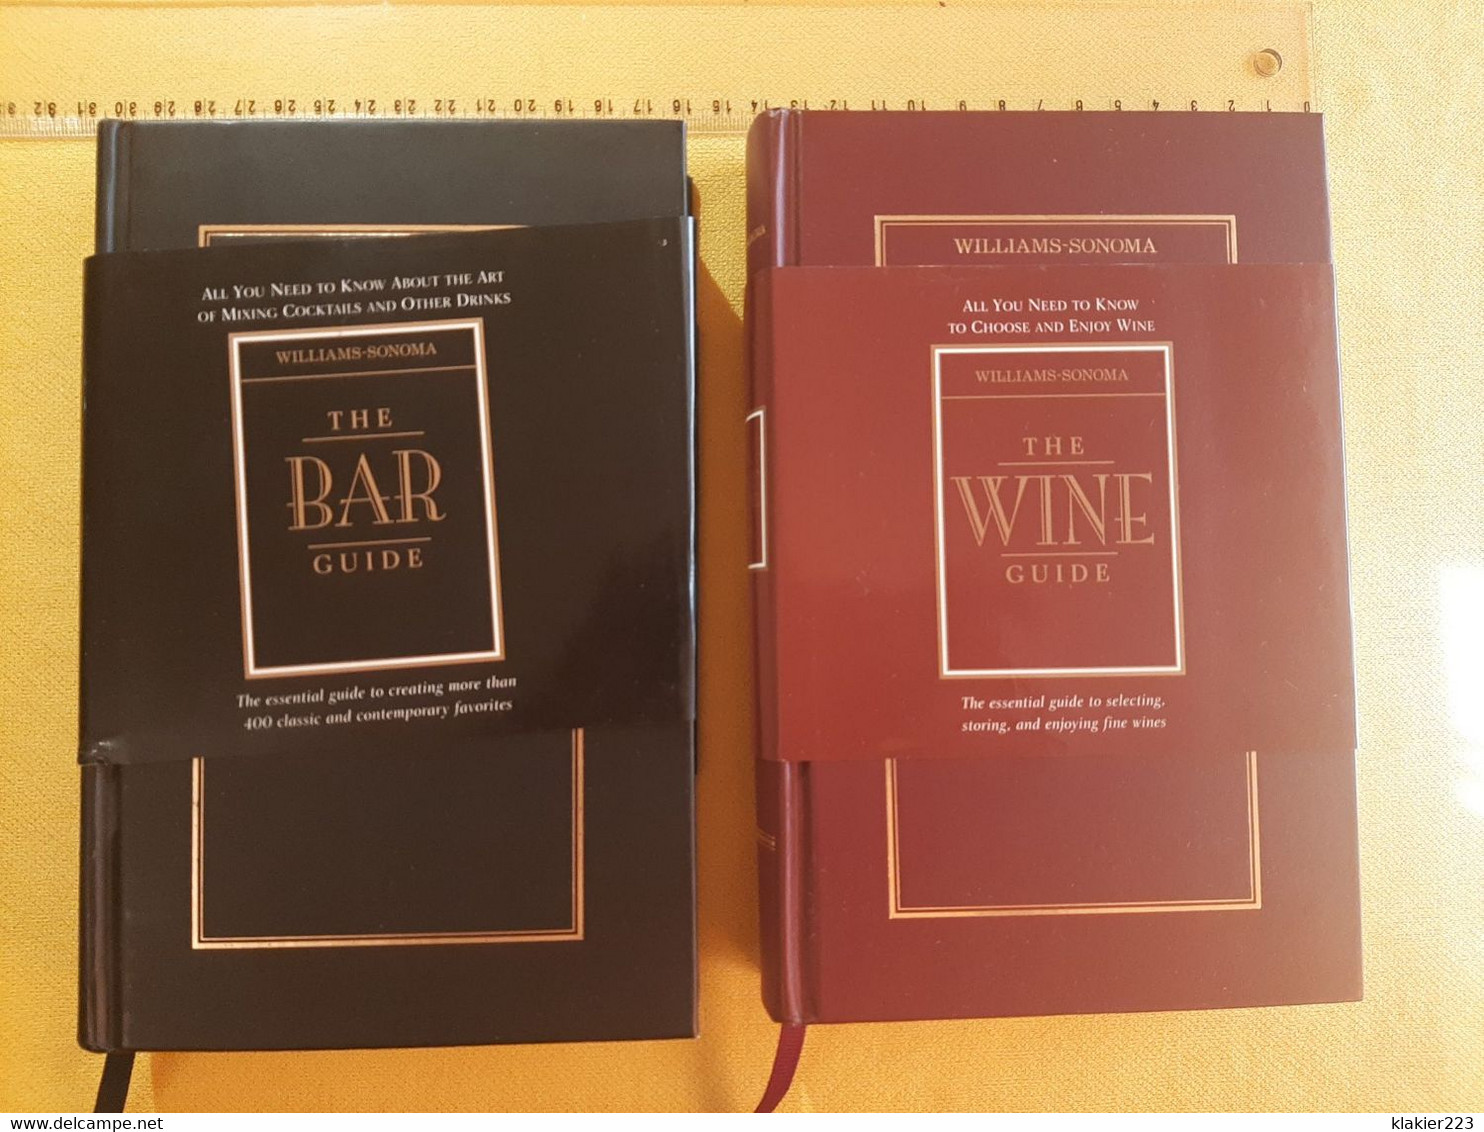 Williams-Sonoma - The Bar Guide / The Wine Guide - European